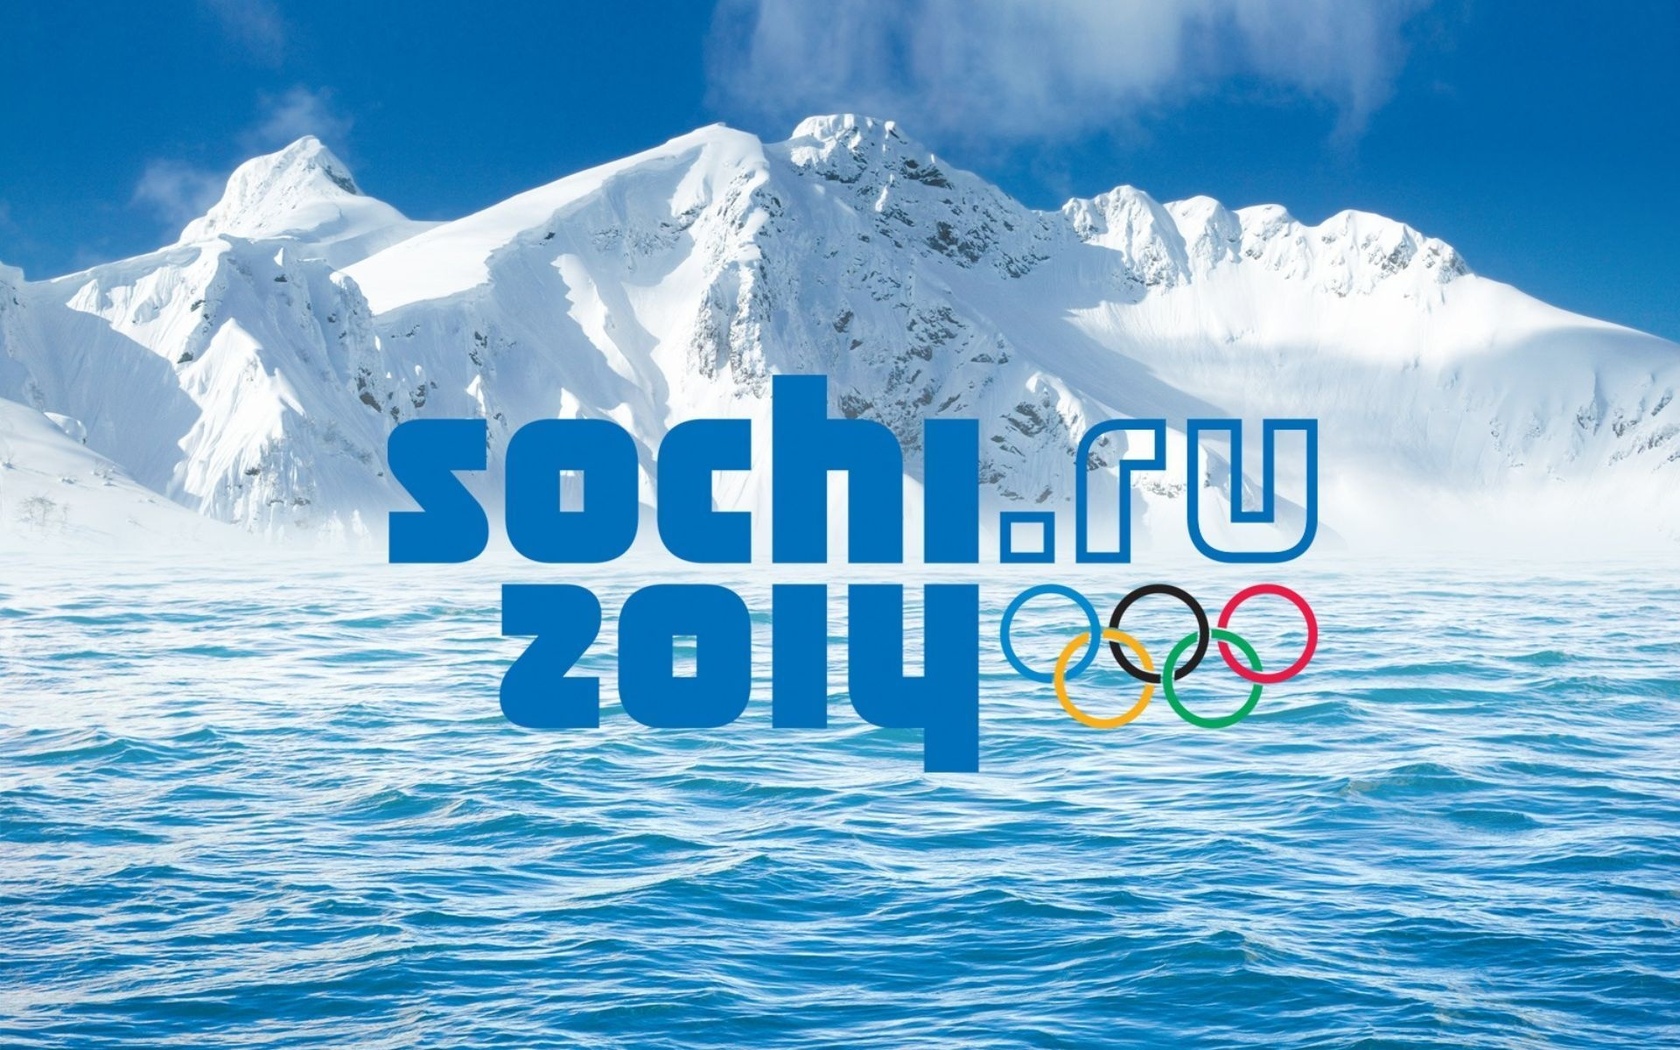 Спорт Зимние сочи 2014, олимпиада, олимпийские игры обои рабочий стол